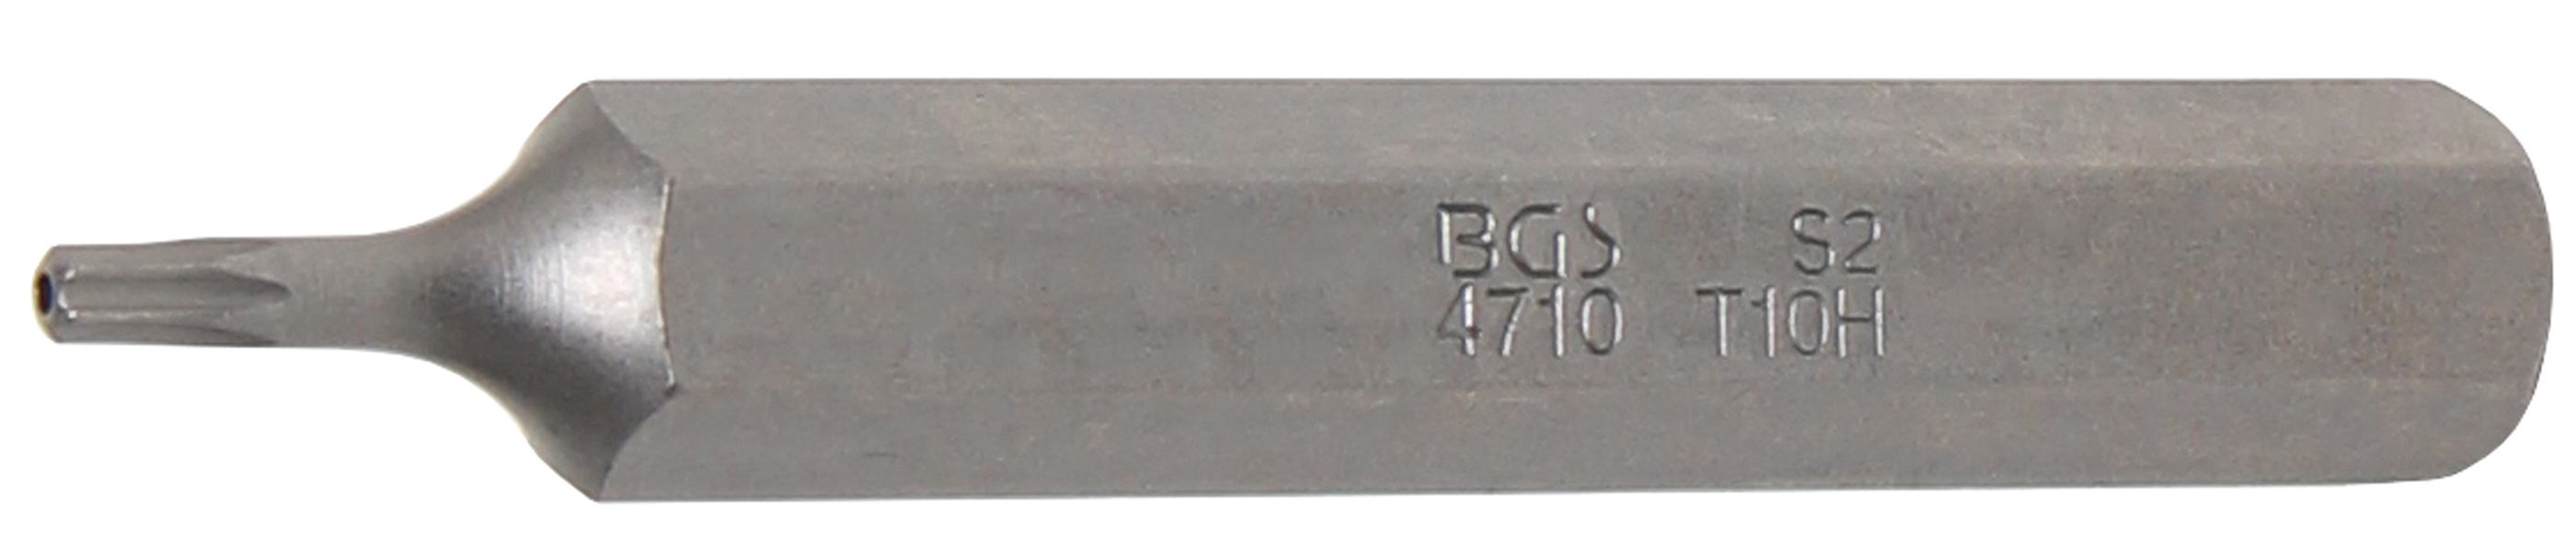 BGS 4710 Bit Torx T10 cu gaura de securizare, lungime 75mm, antrenare 10mm(3/8")